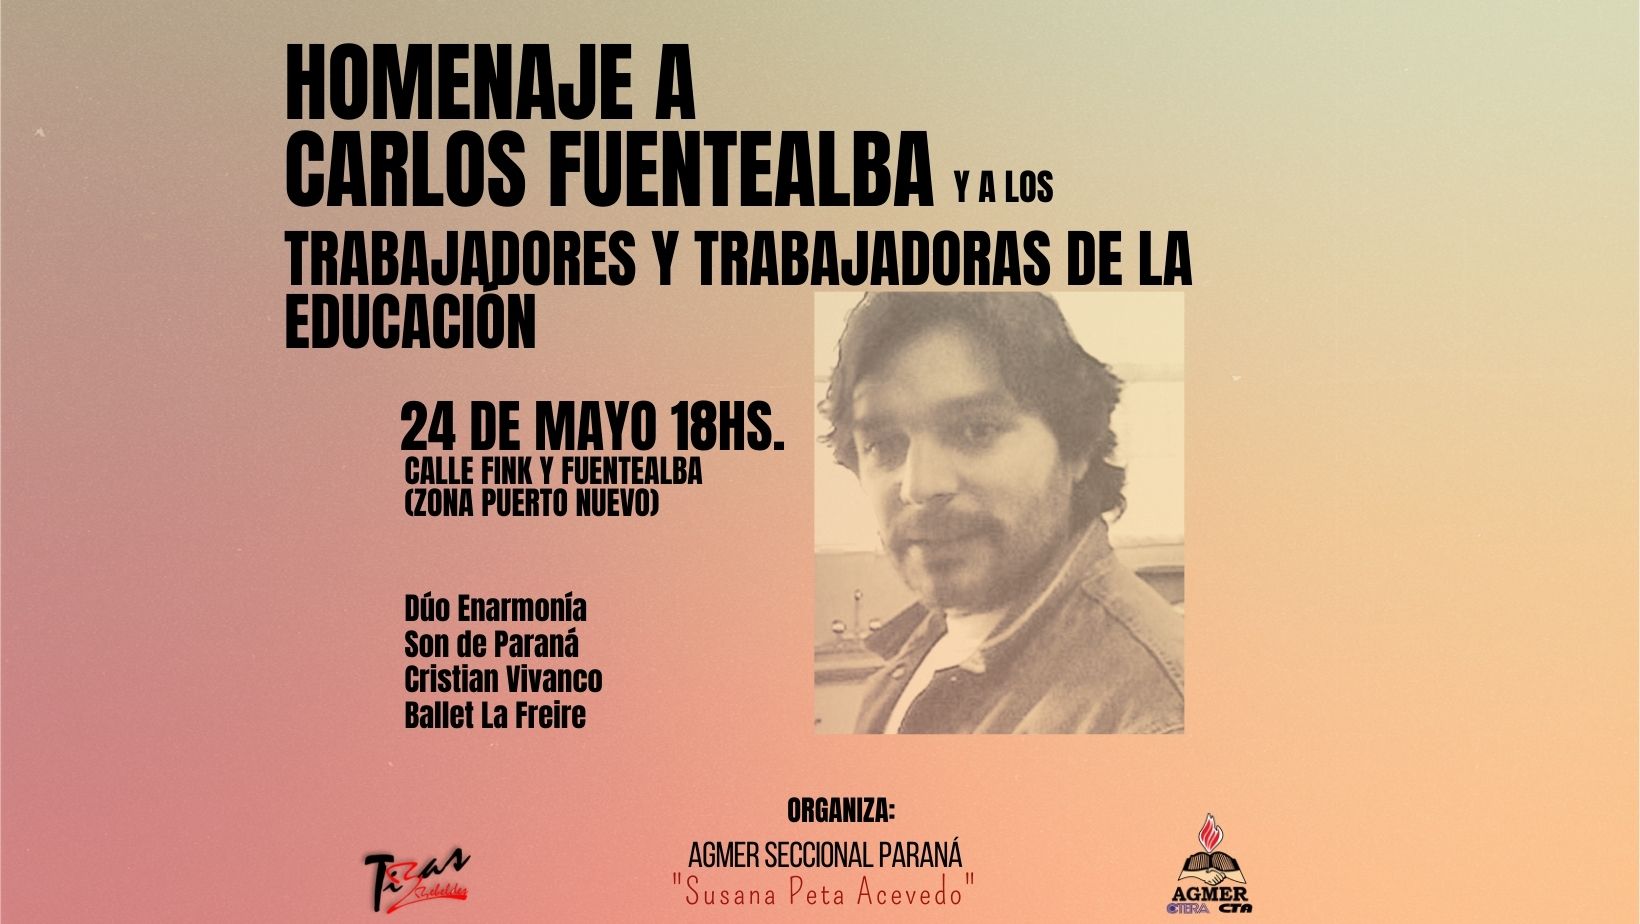 Homenaje a Carlos Fuentealba y a los trabajadores y trabajadoras de la educación